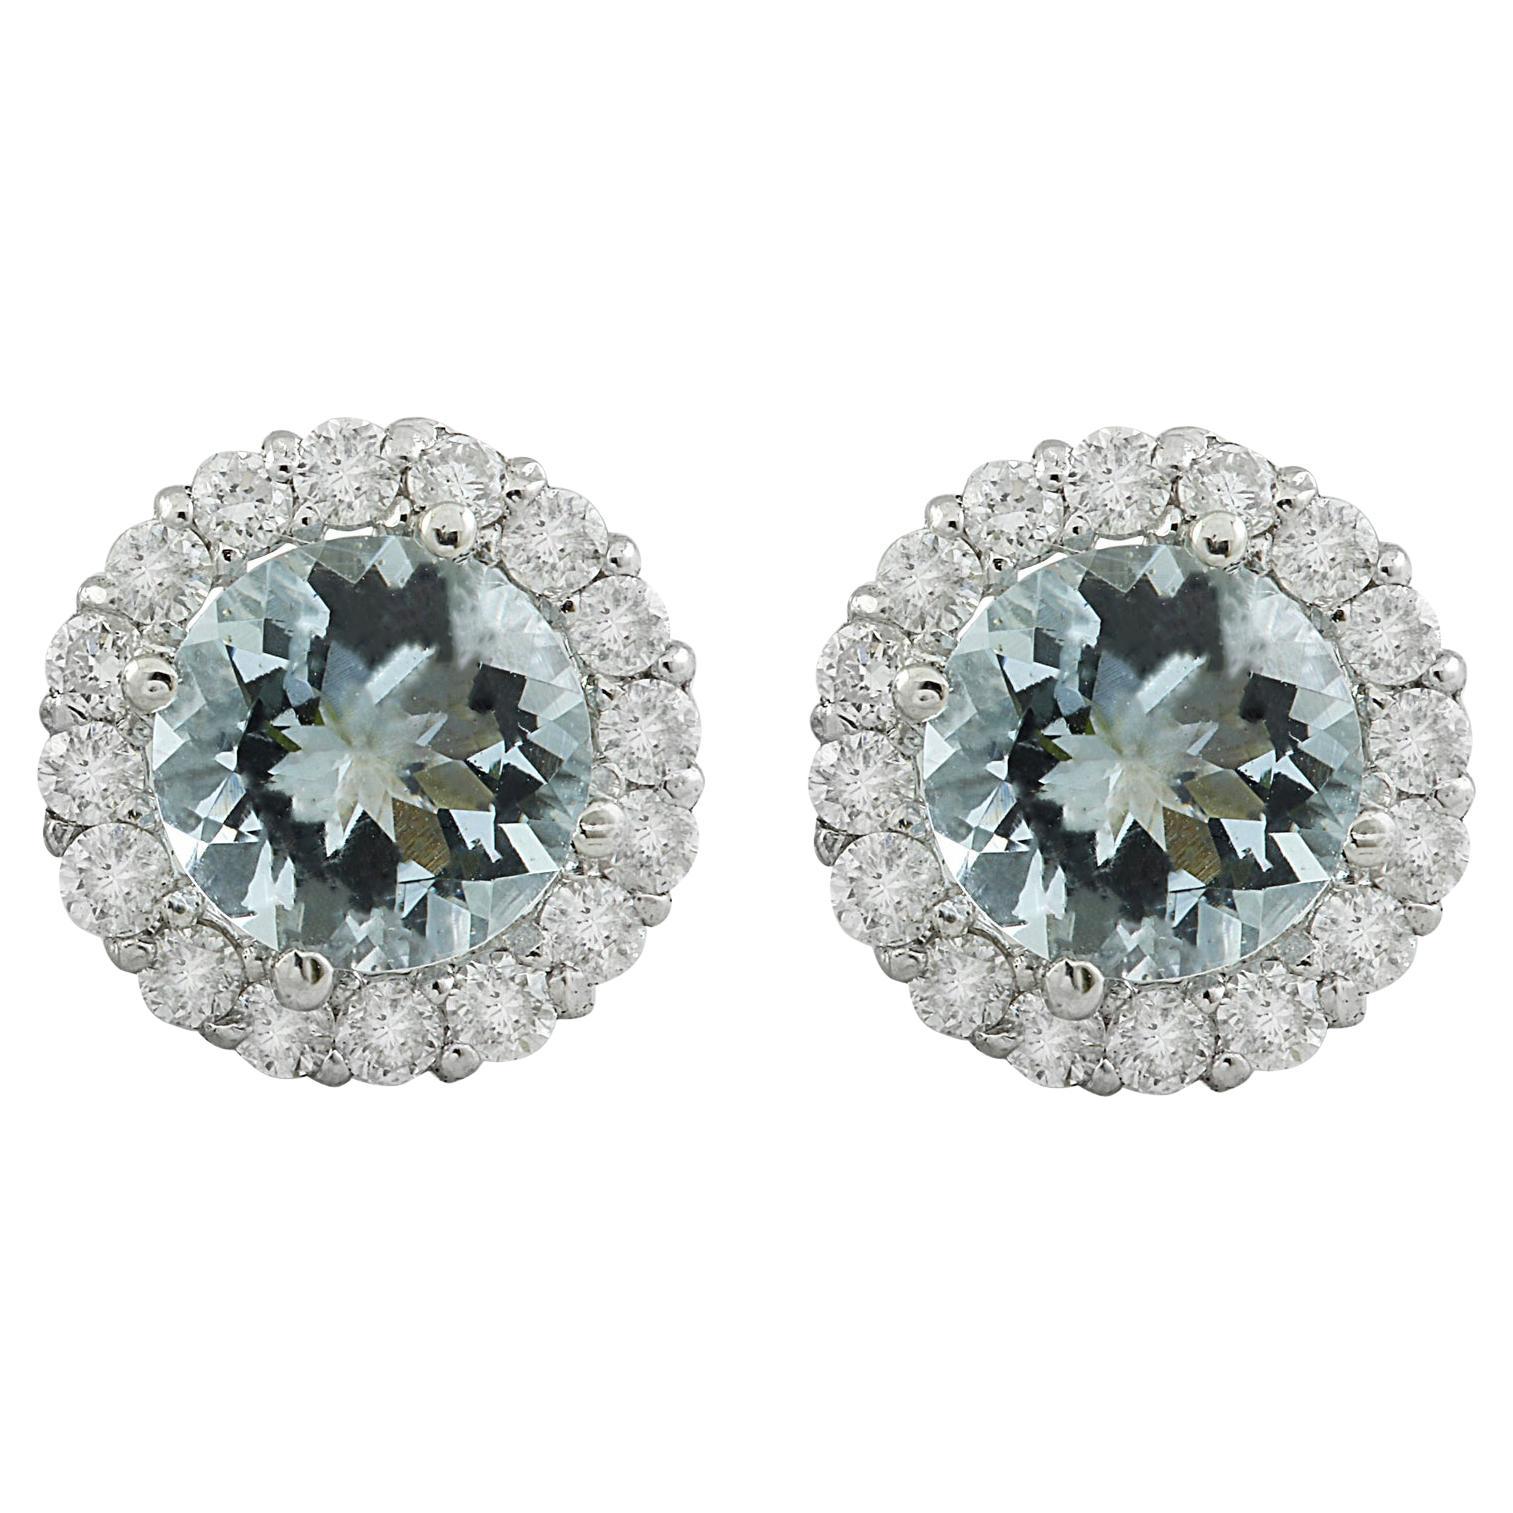 Exquisite Natural Aquamarine Diamond Earrings In 14 Karat White Gold